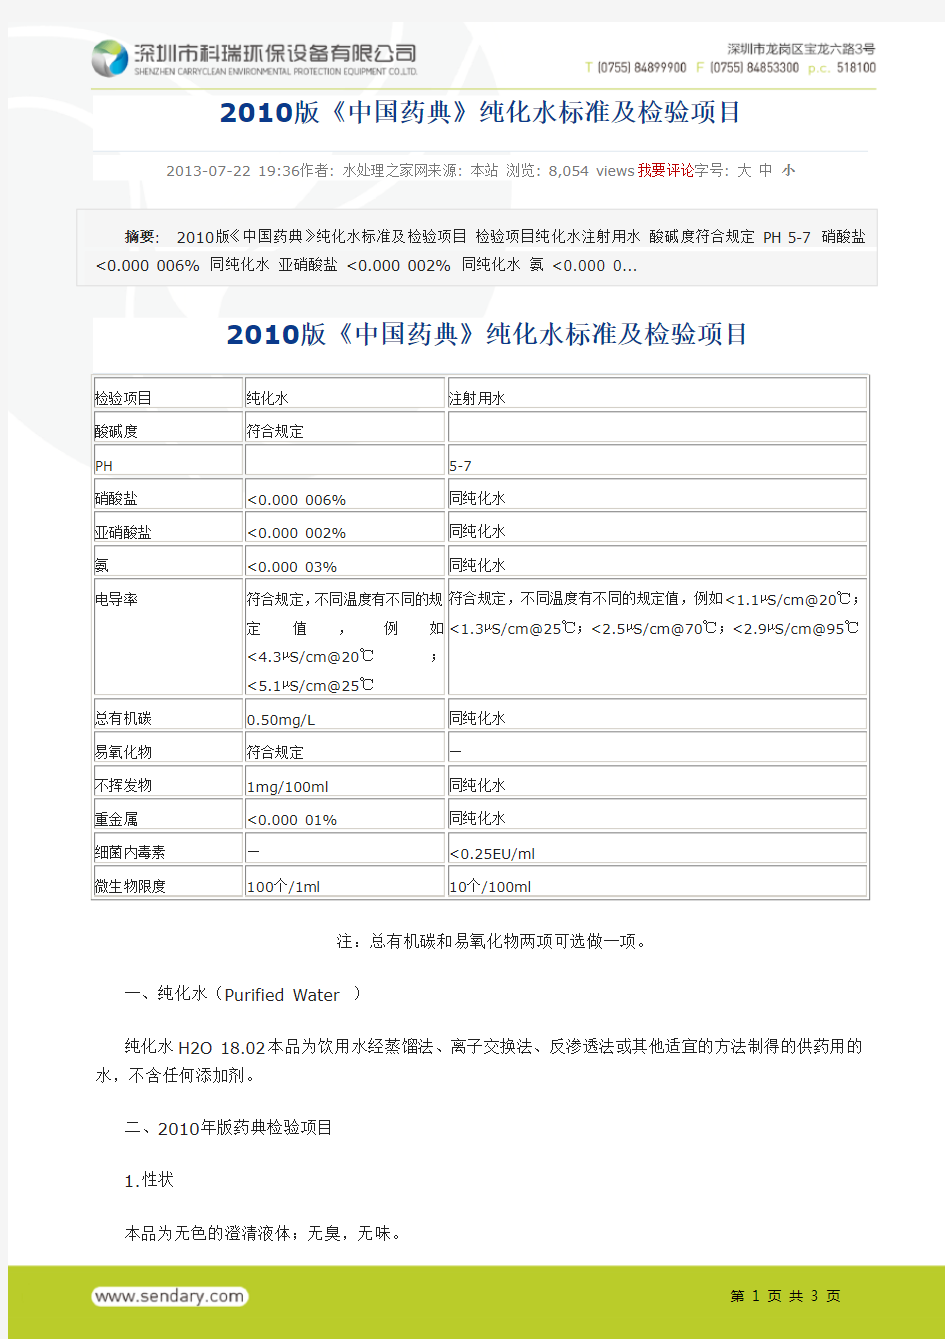 2010版《中国药典》纯化水标准及检测项目